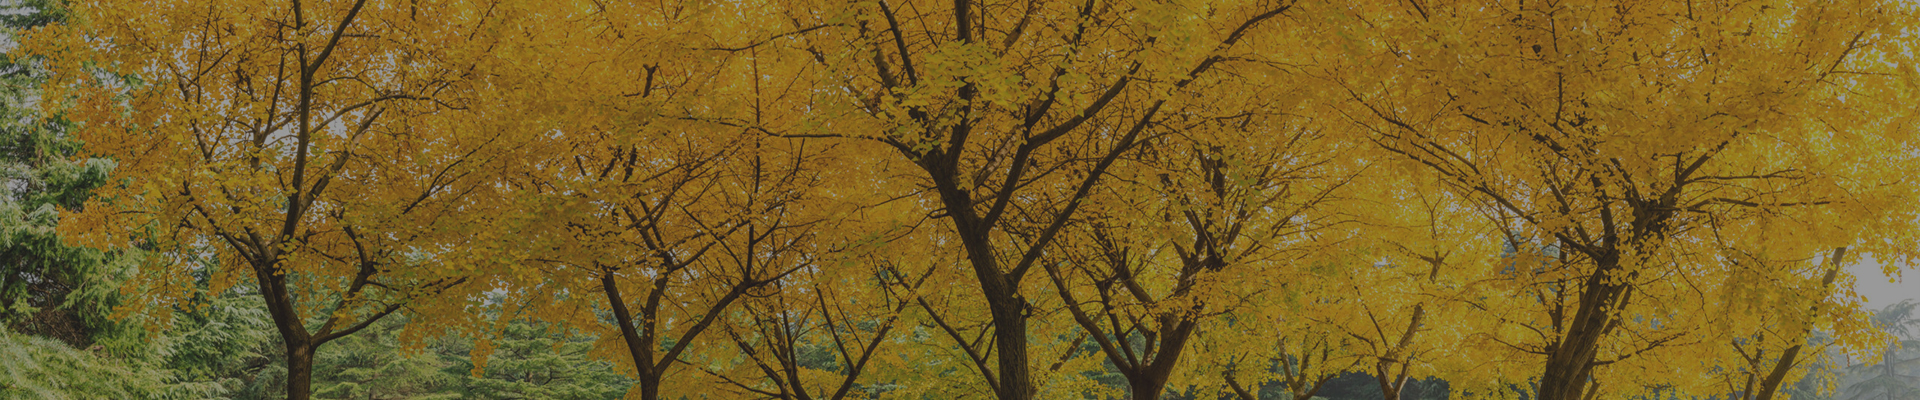 銀杏の木の画像